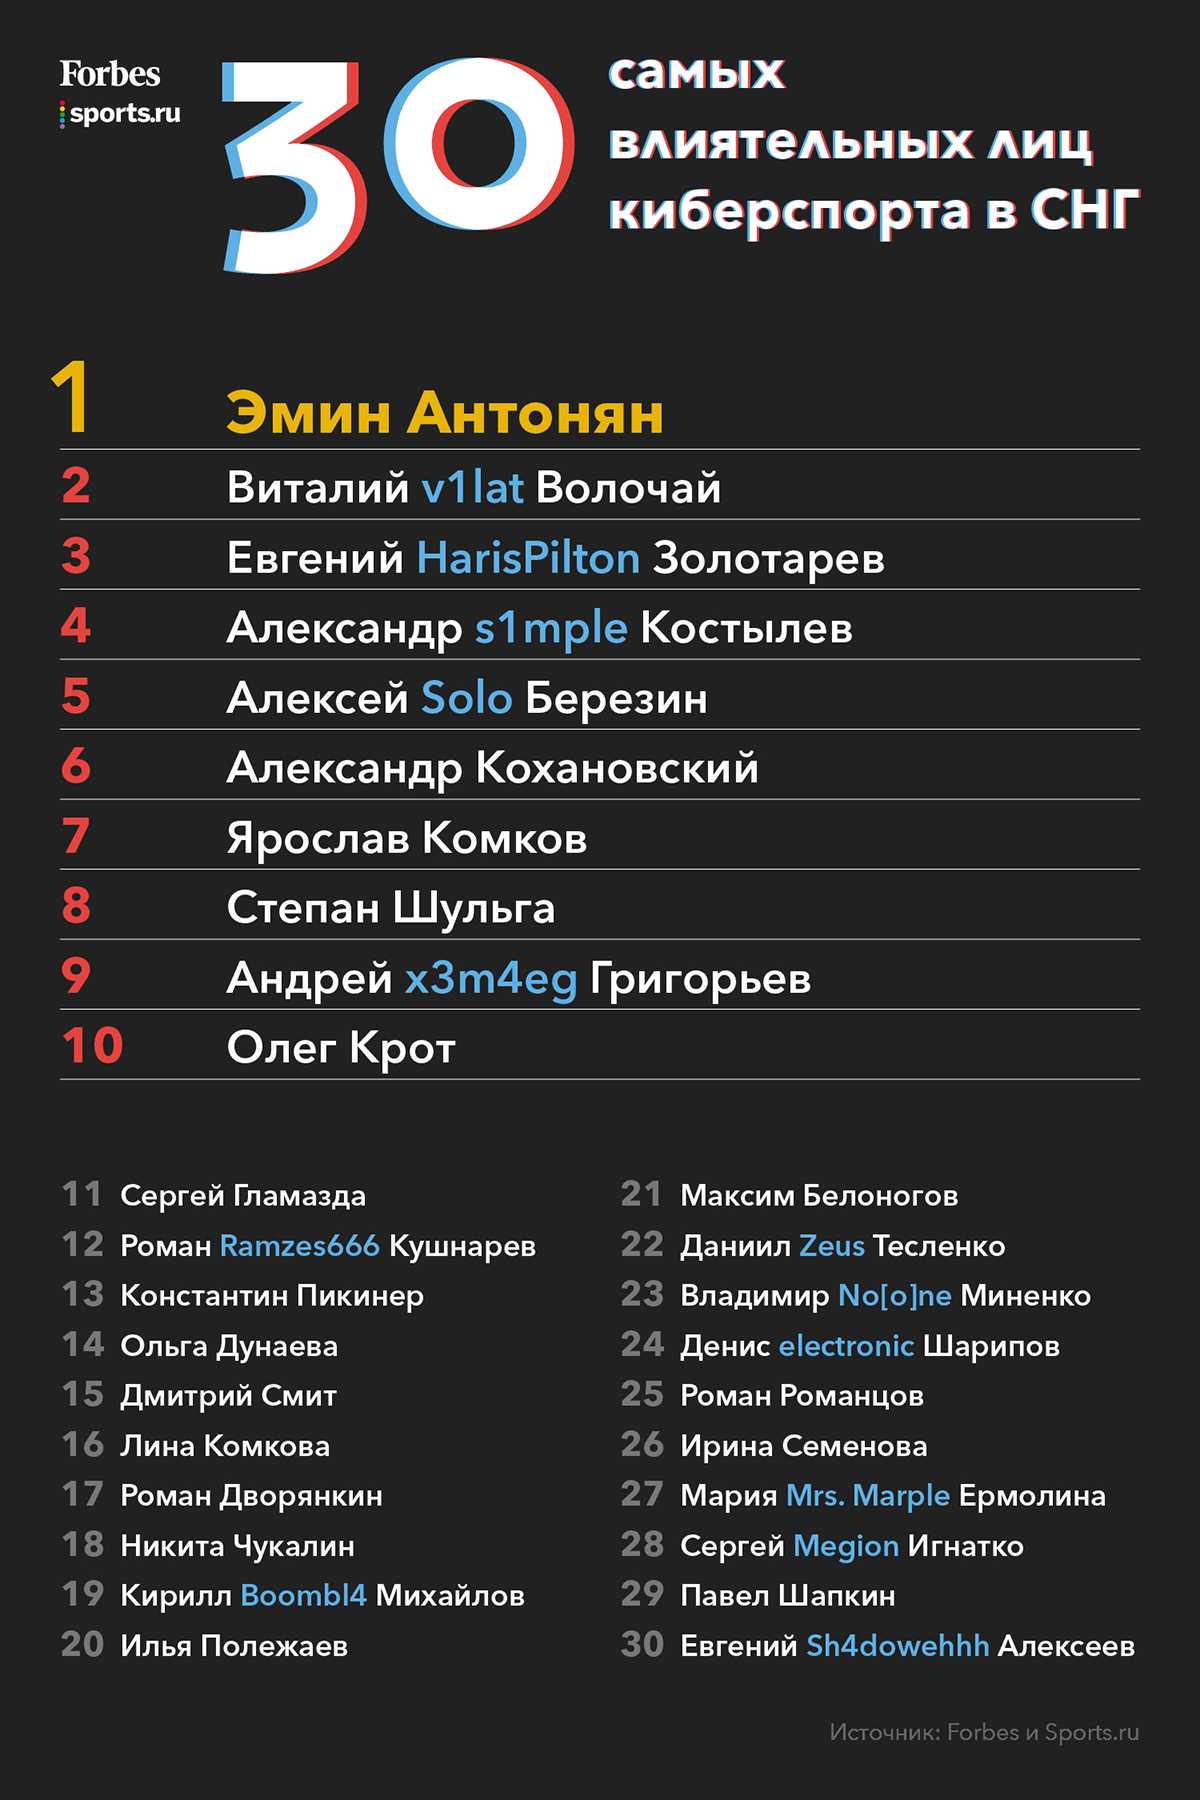 Рейтинг форбс 2020: 10 самых богатых спортсменов россии - betnbet